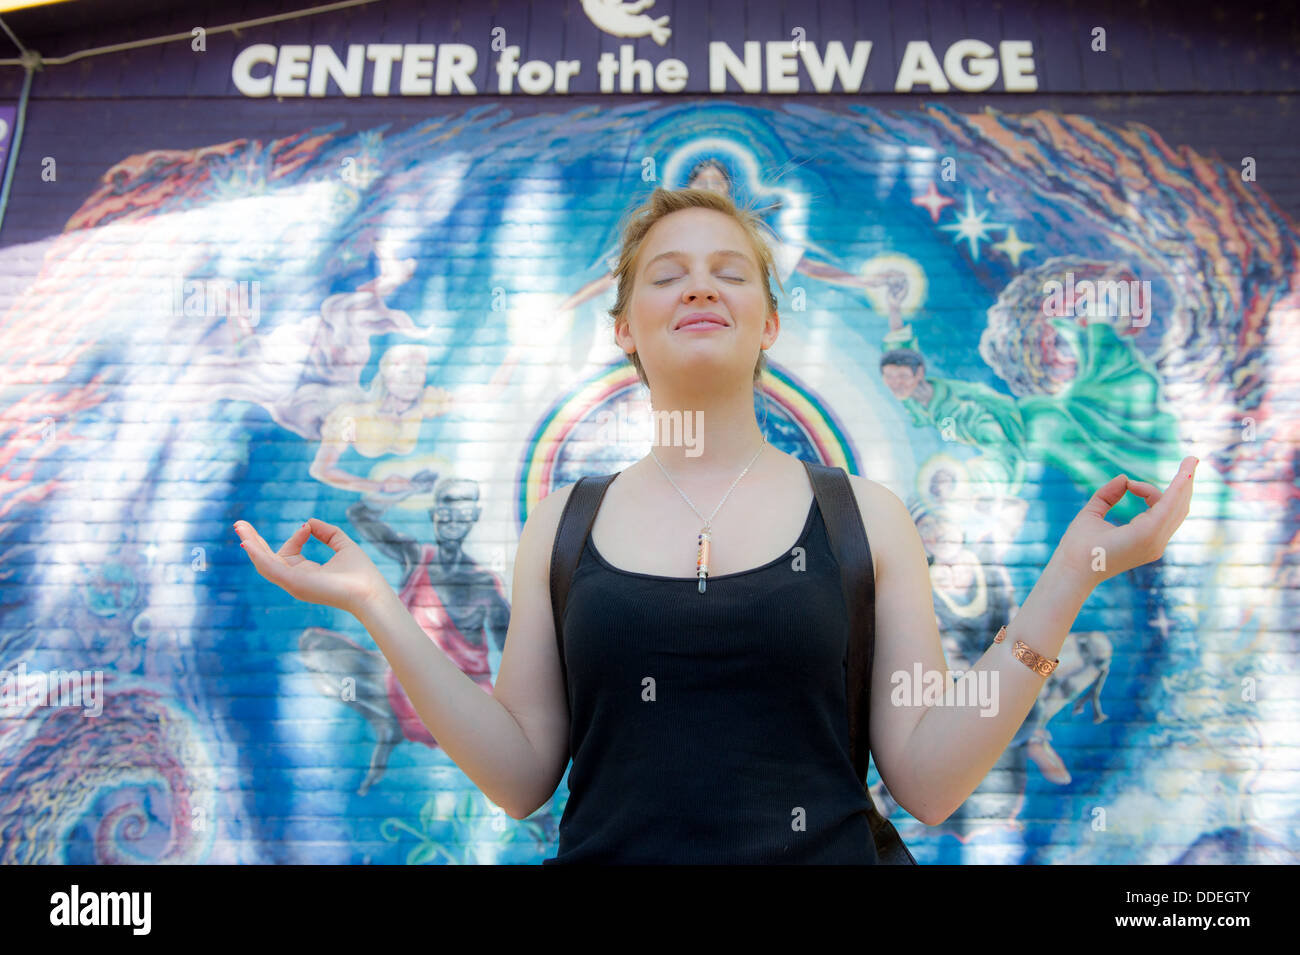 Mujer meditando enfrente del Centro para la nueva edad Poster Sedona, Arizona Foto de stock